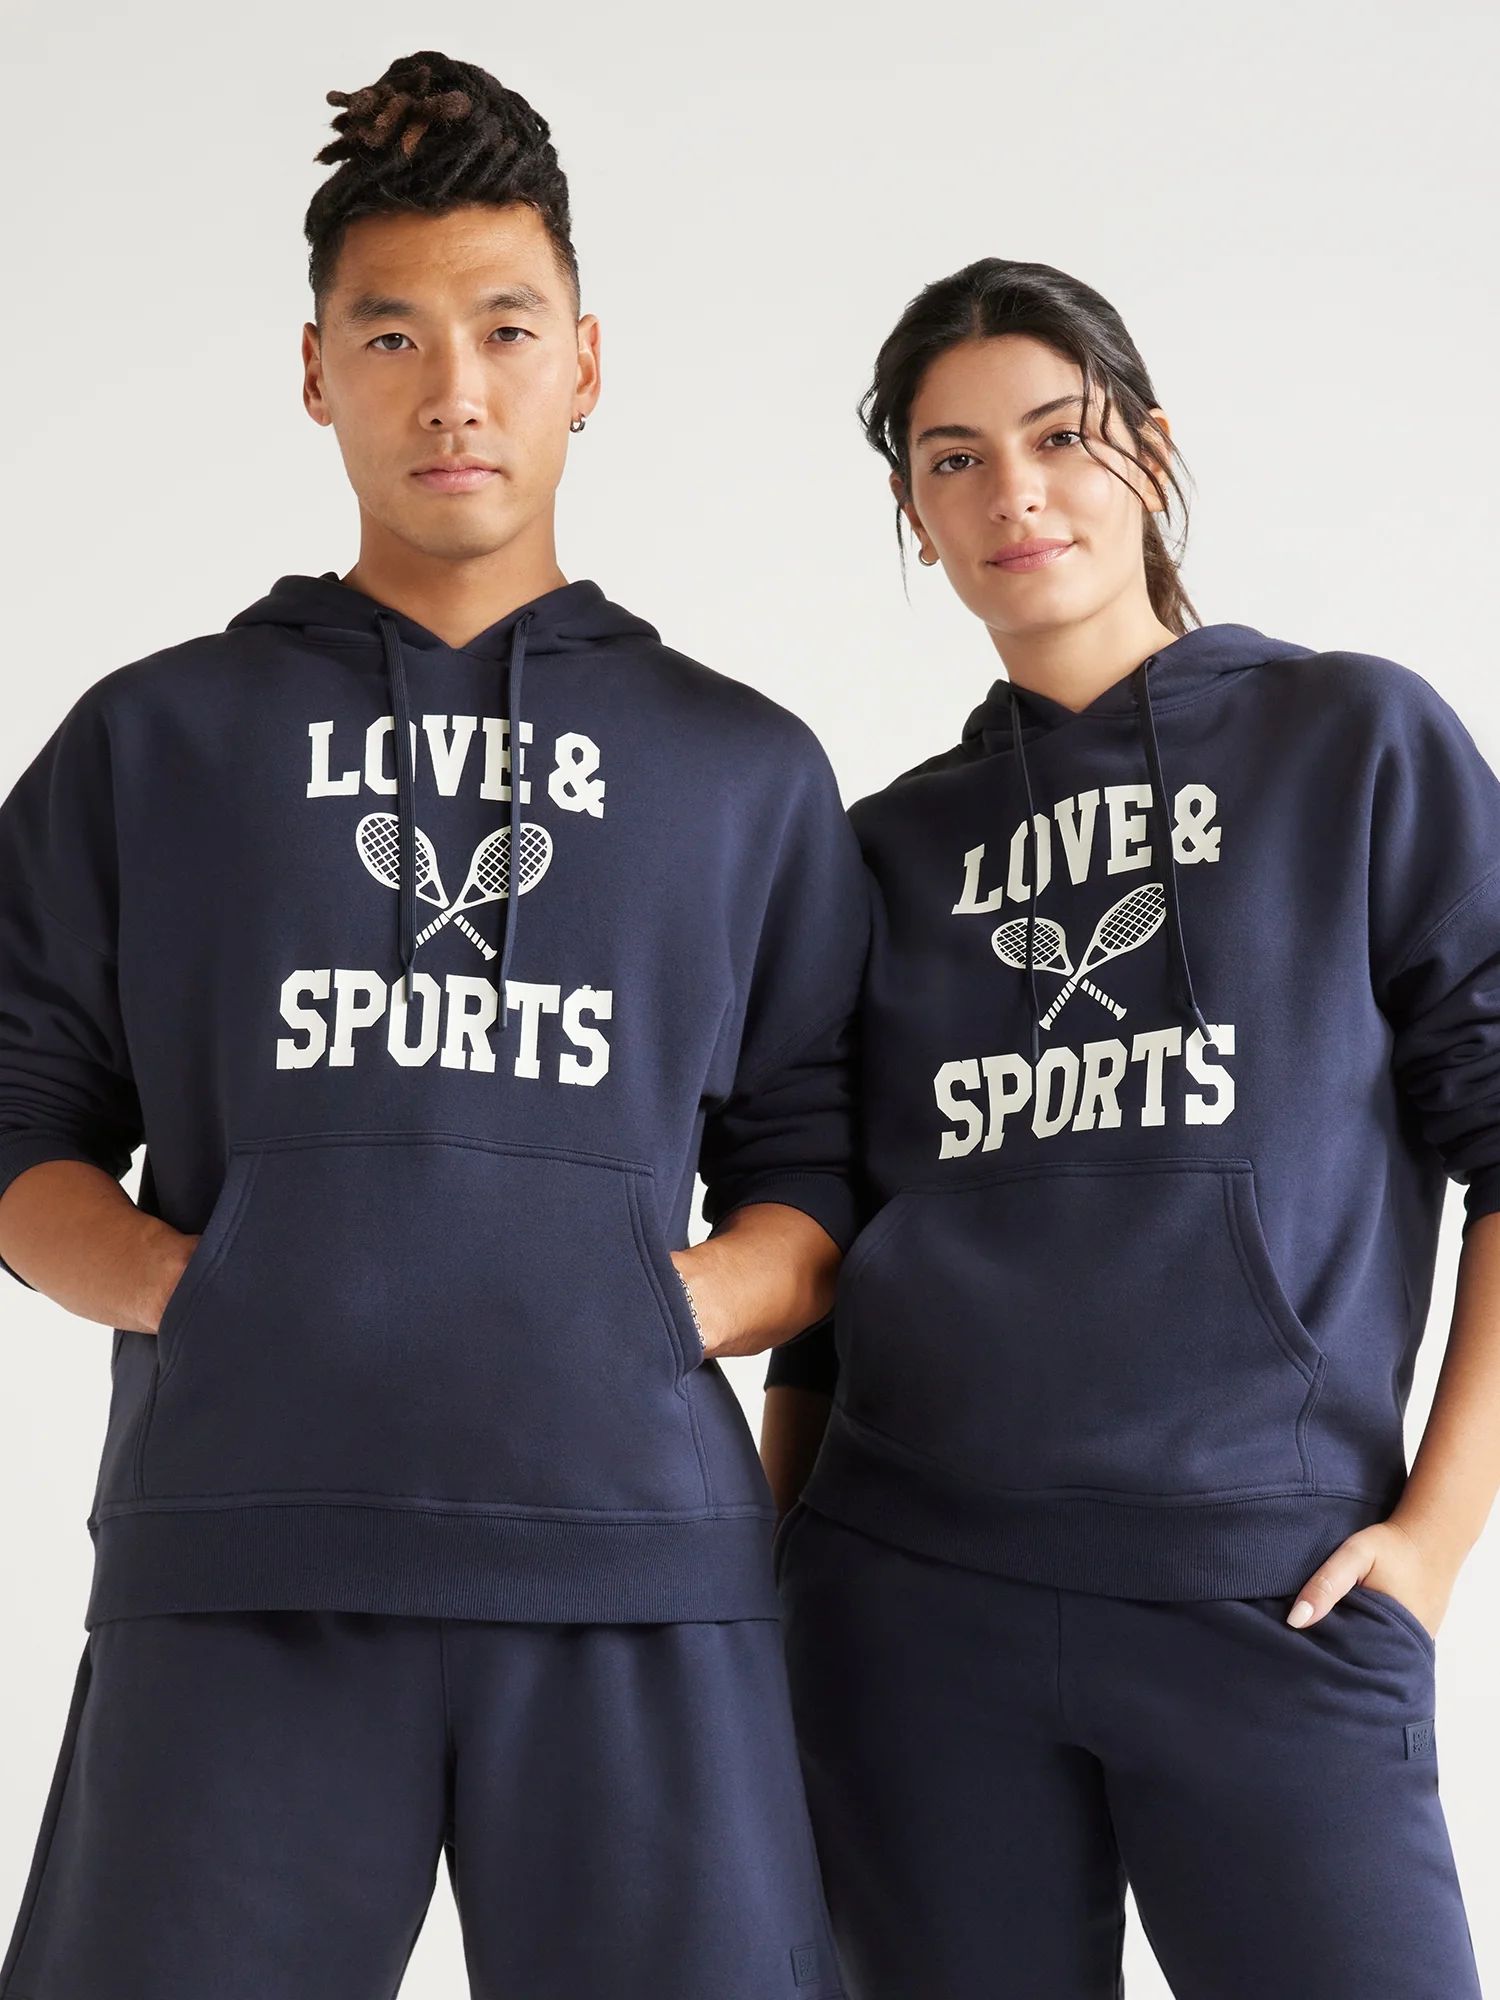 Love & Sports All Gender Pullover Graphic Hoodie, S-XXXL | Walmart (US)